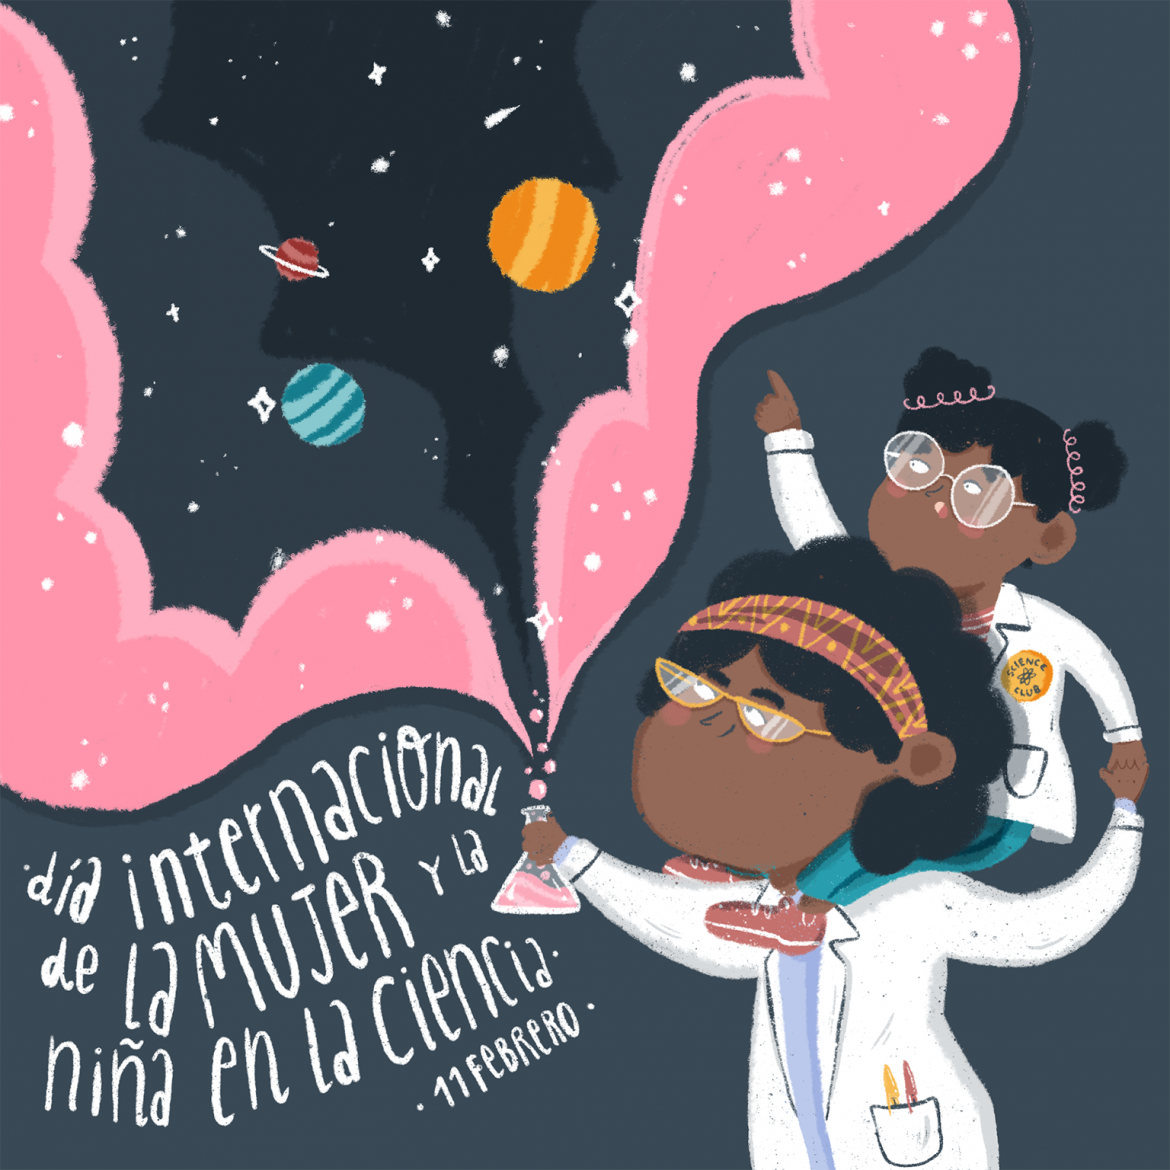 11 febrero 2021 - día internacional de la mujer y la niña en la ciencia